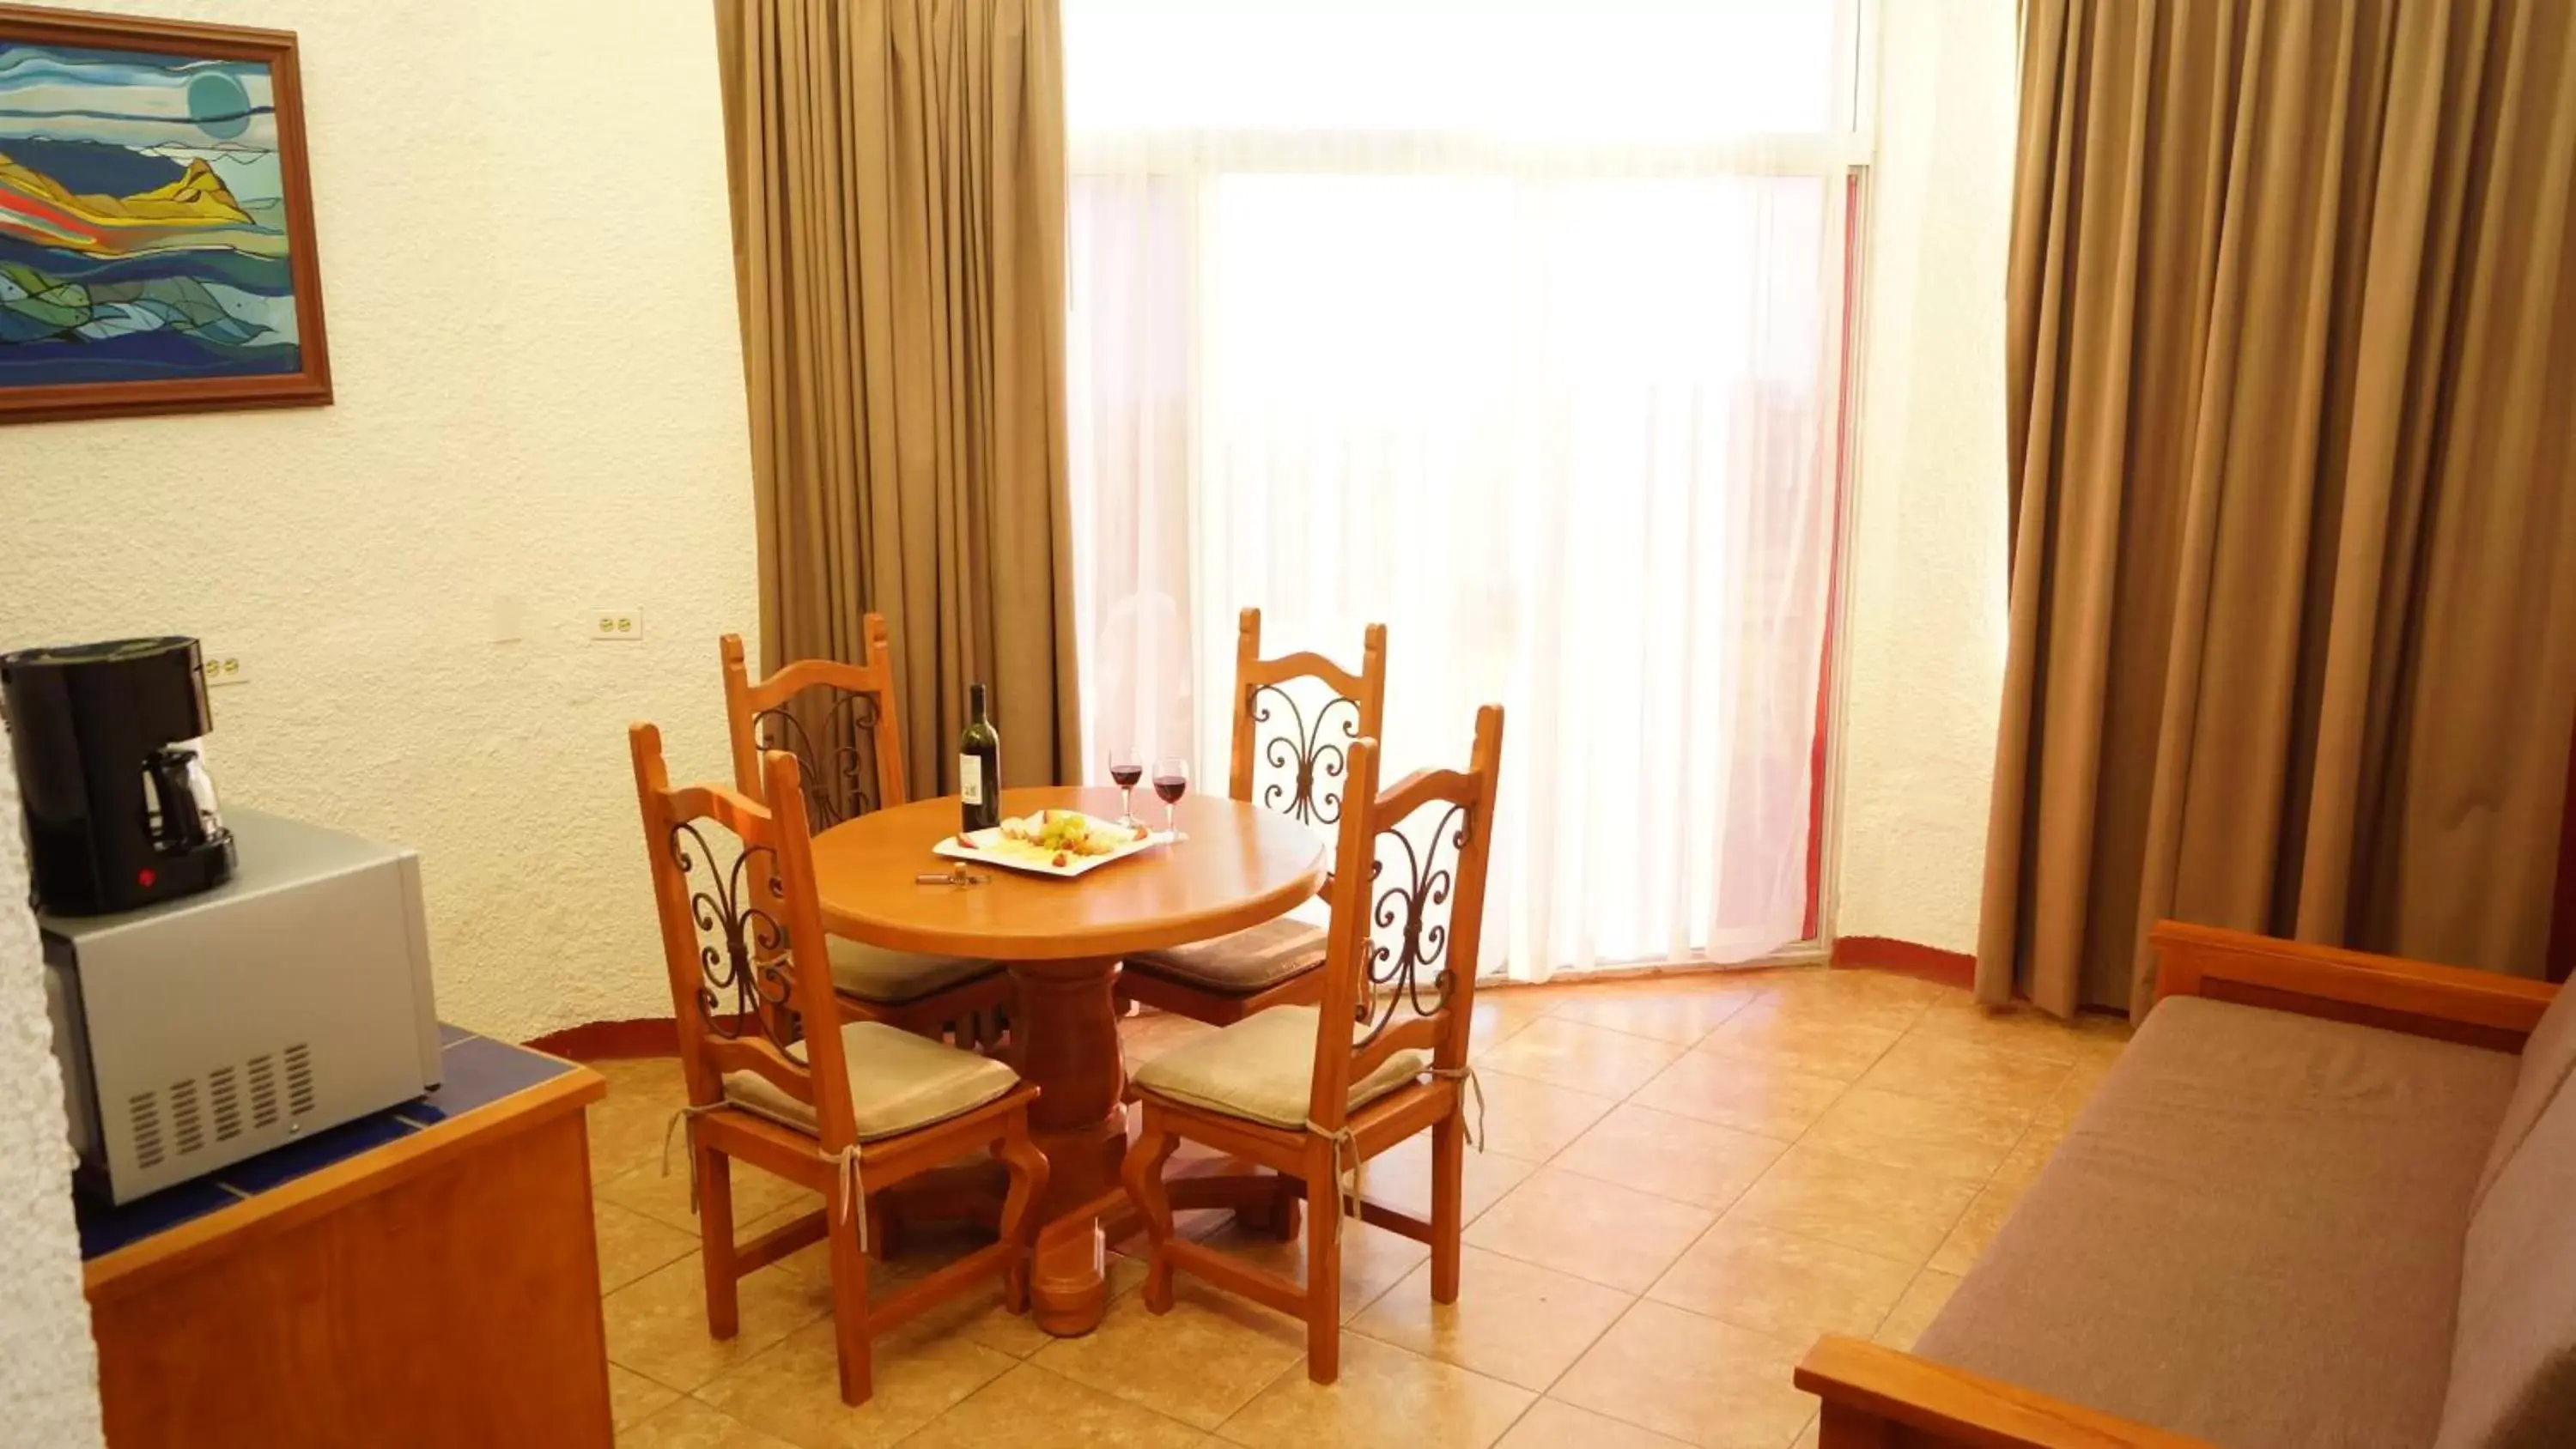 Living room, Dining Area in Puerto Nuevo Baja Hotel & Villas